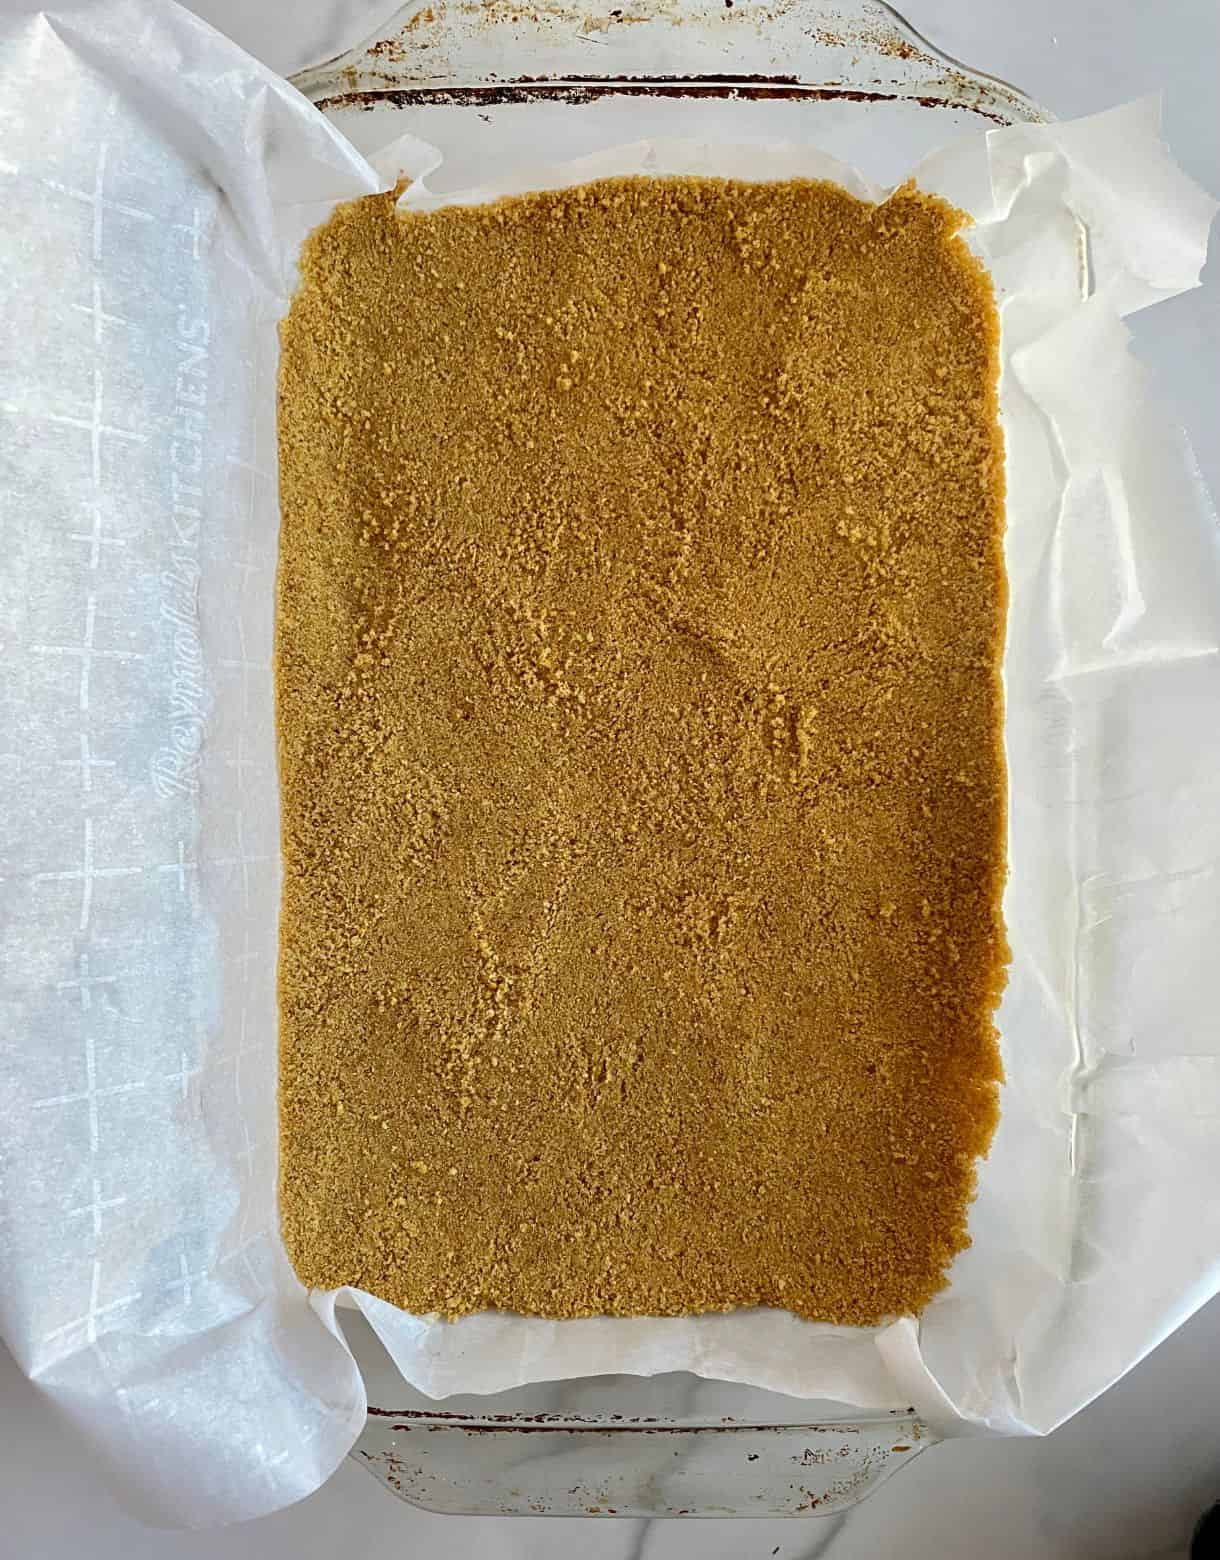 An un-baked graham cracker crust in a 9x13 dish.